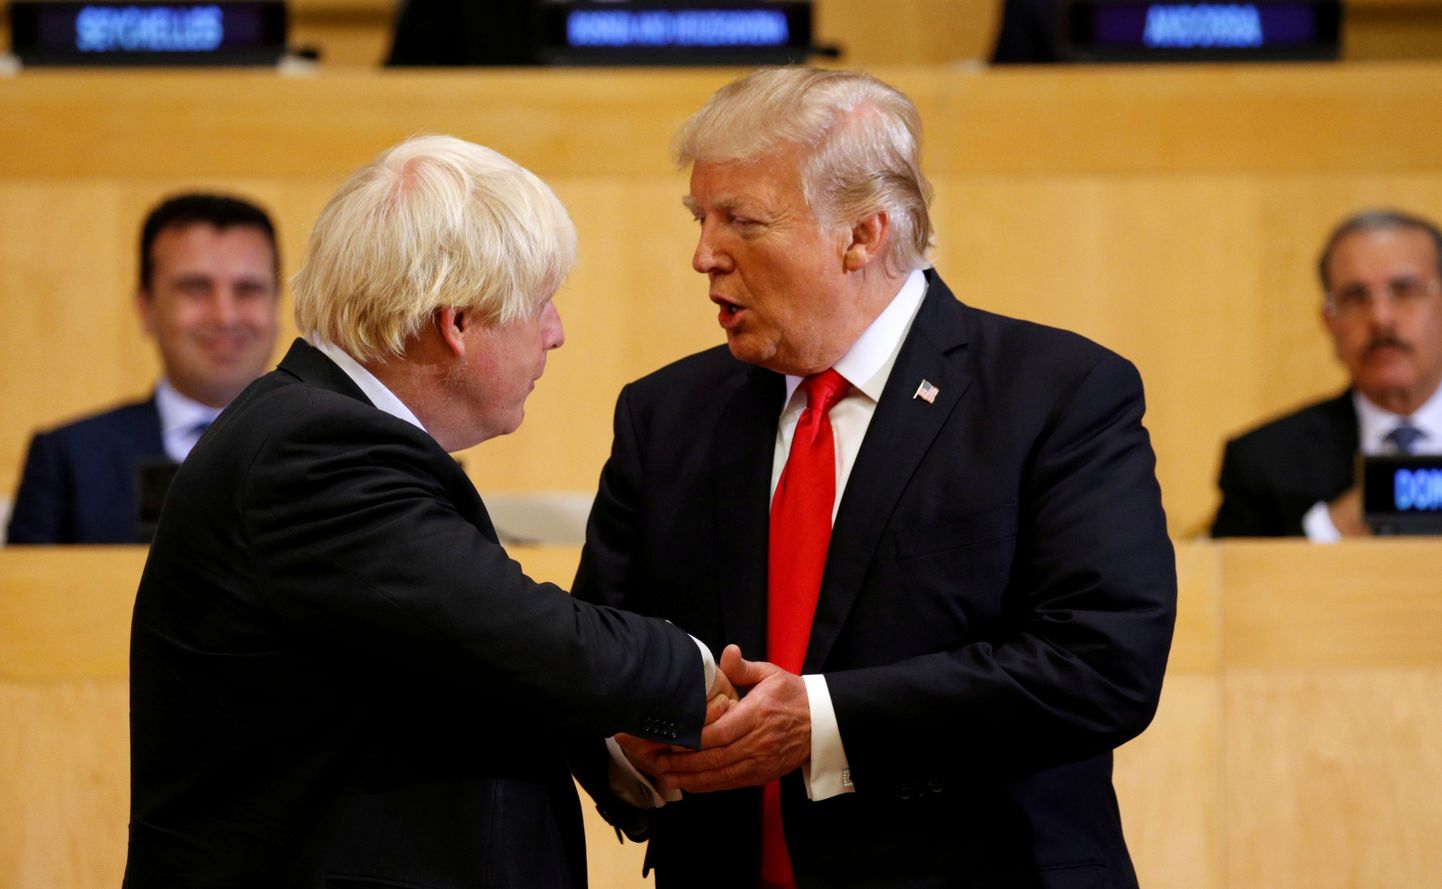 Briti peaminister Boris Johnson (vasakul) ja USA president Donald Trump New Yorgis ÜRO peakorteris sellel 2017. aasta 18. septembrist pärineval fotol. Johnson oli toona Briti välisminister.